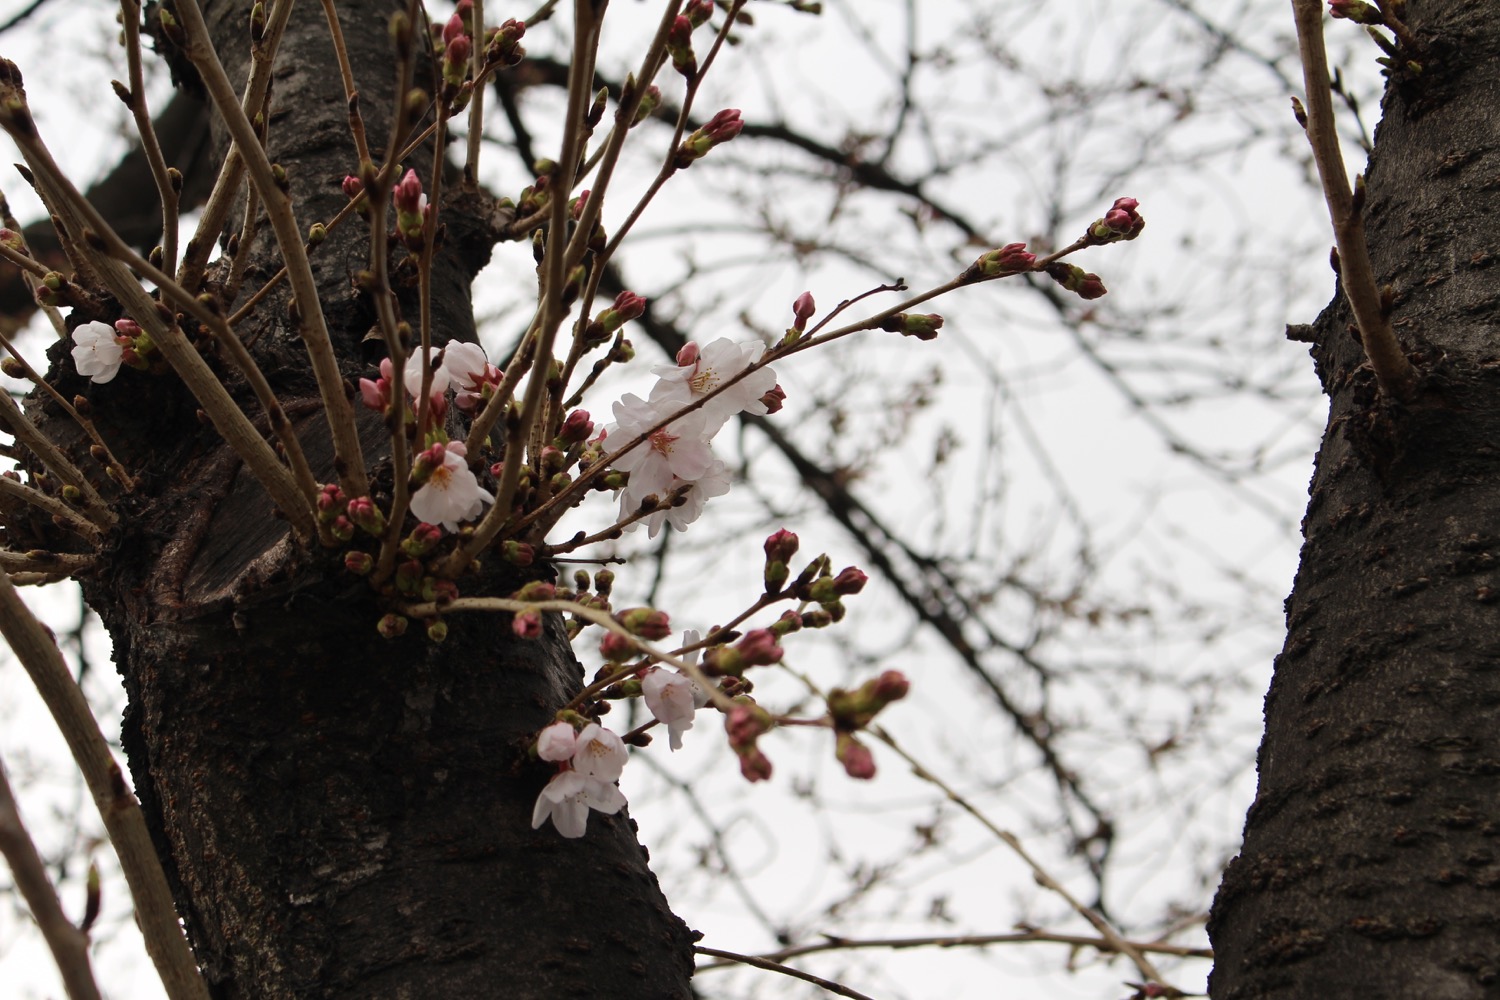 武蔵浦和ロッテ寮の桜